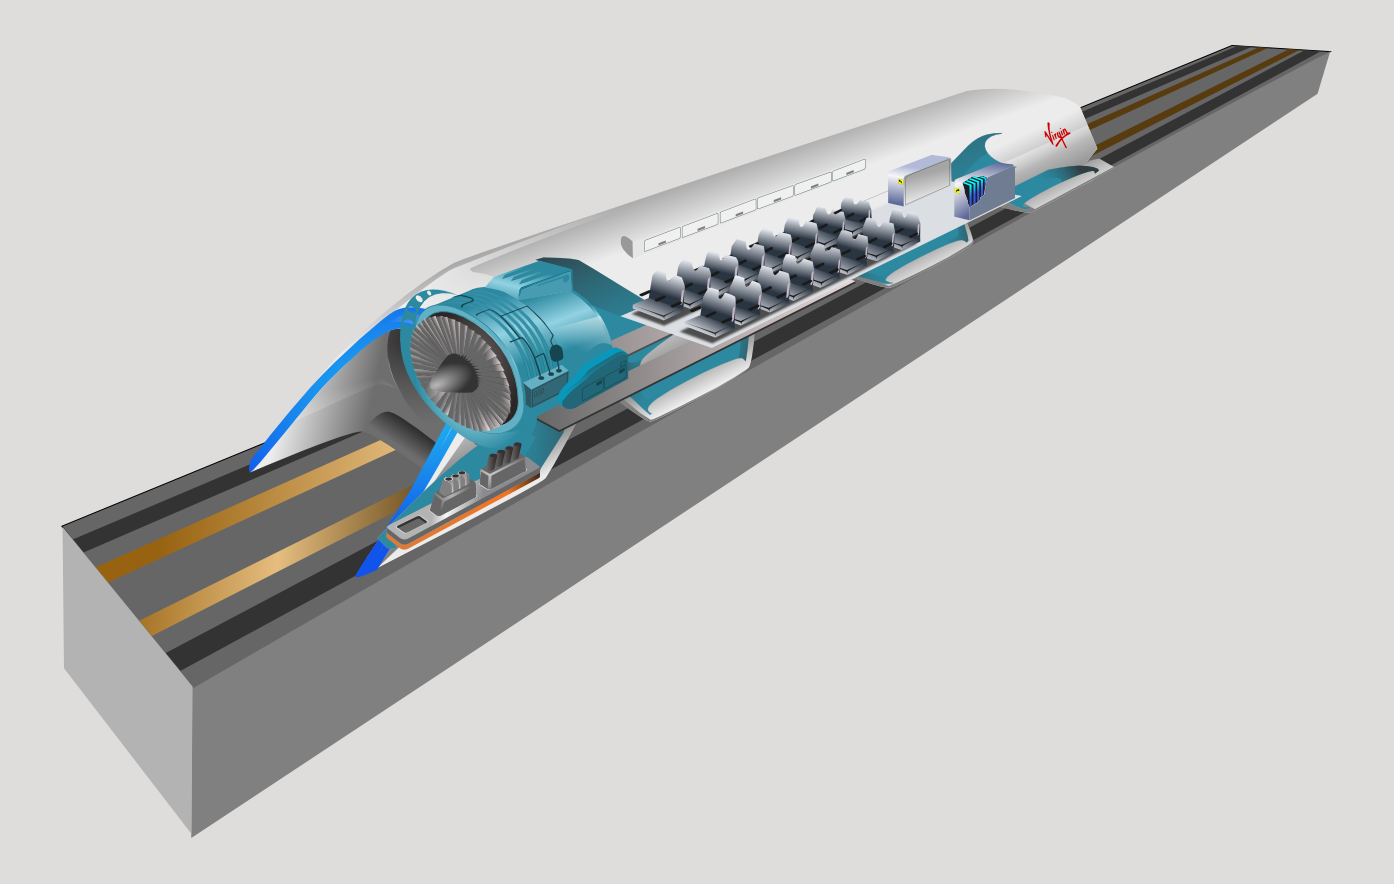 UK Hyperloop